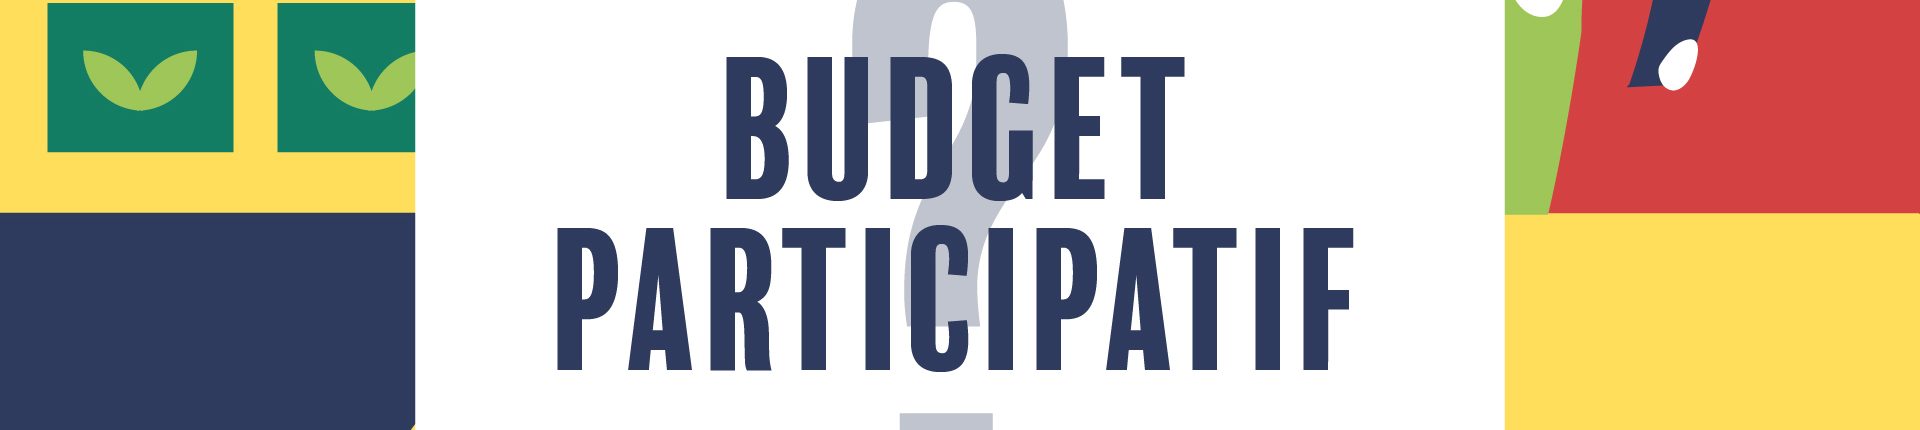 Le budget participatif en quelques mots